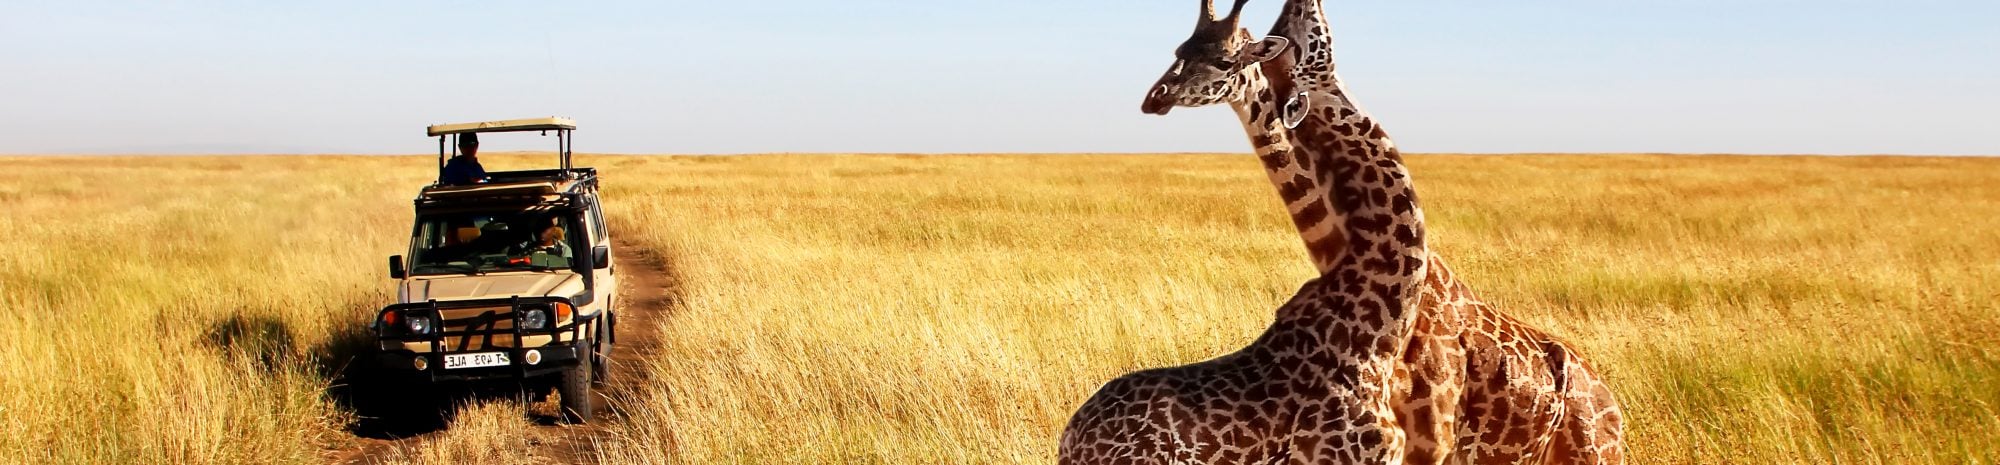 Comment planifier son safari en Afrique du sud?